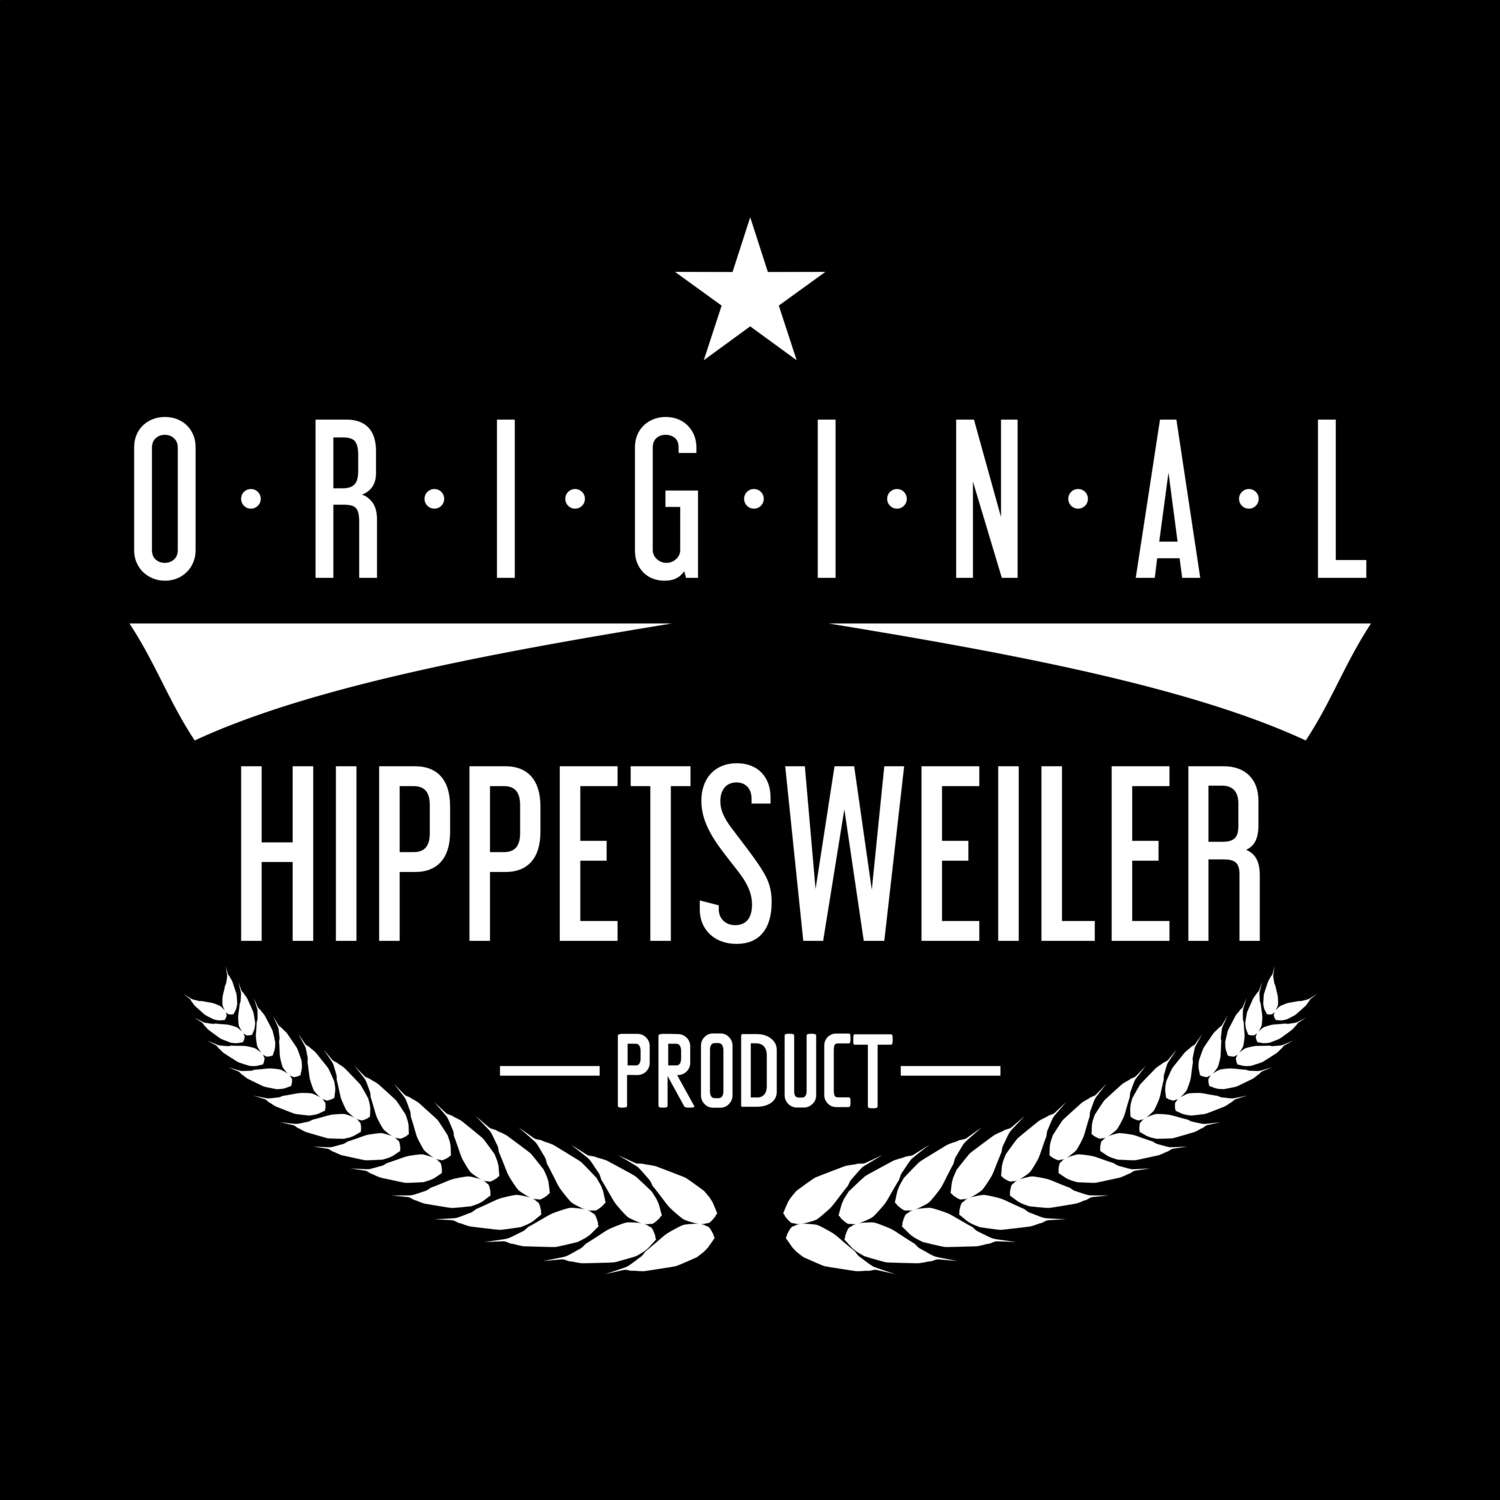 Hippetsweiler T-Shirt »Original Product«